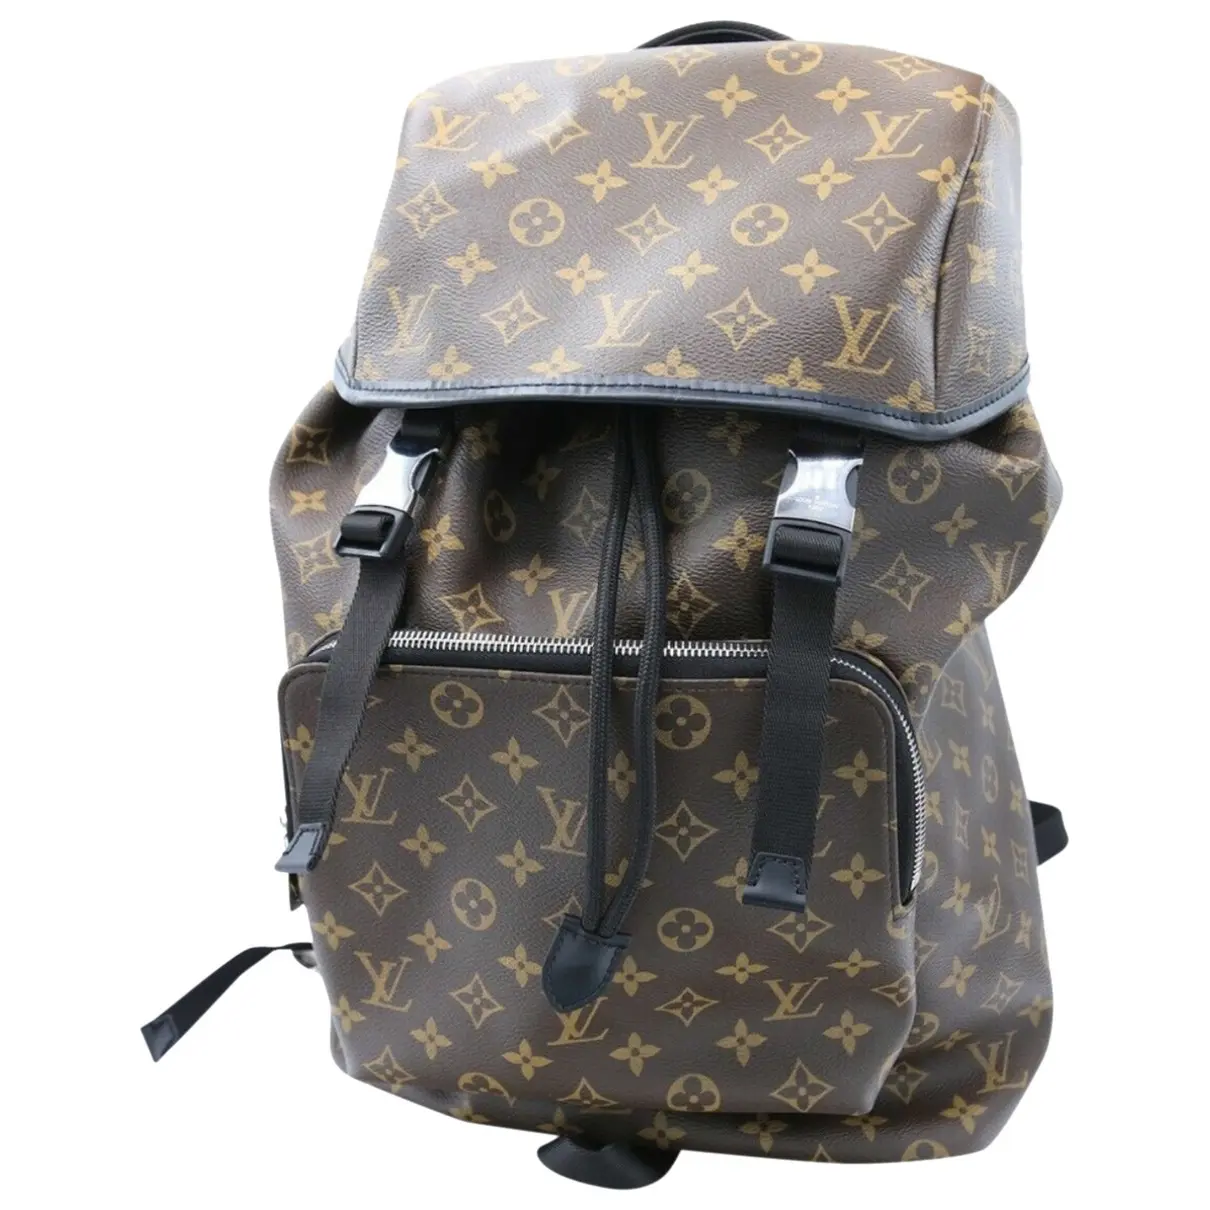 Zack cloth bag Louis Vuitton